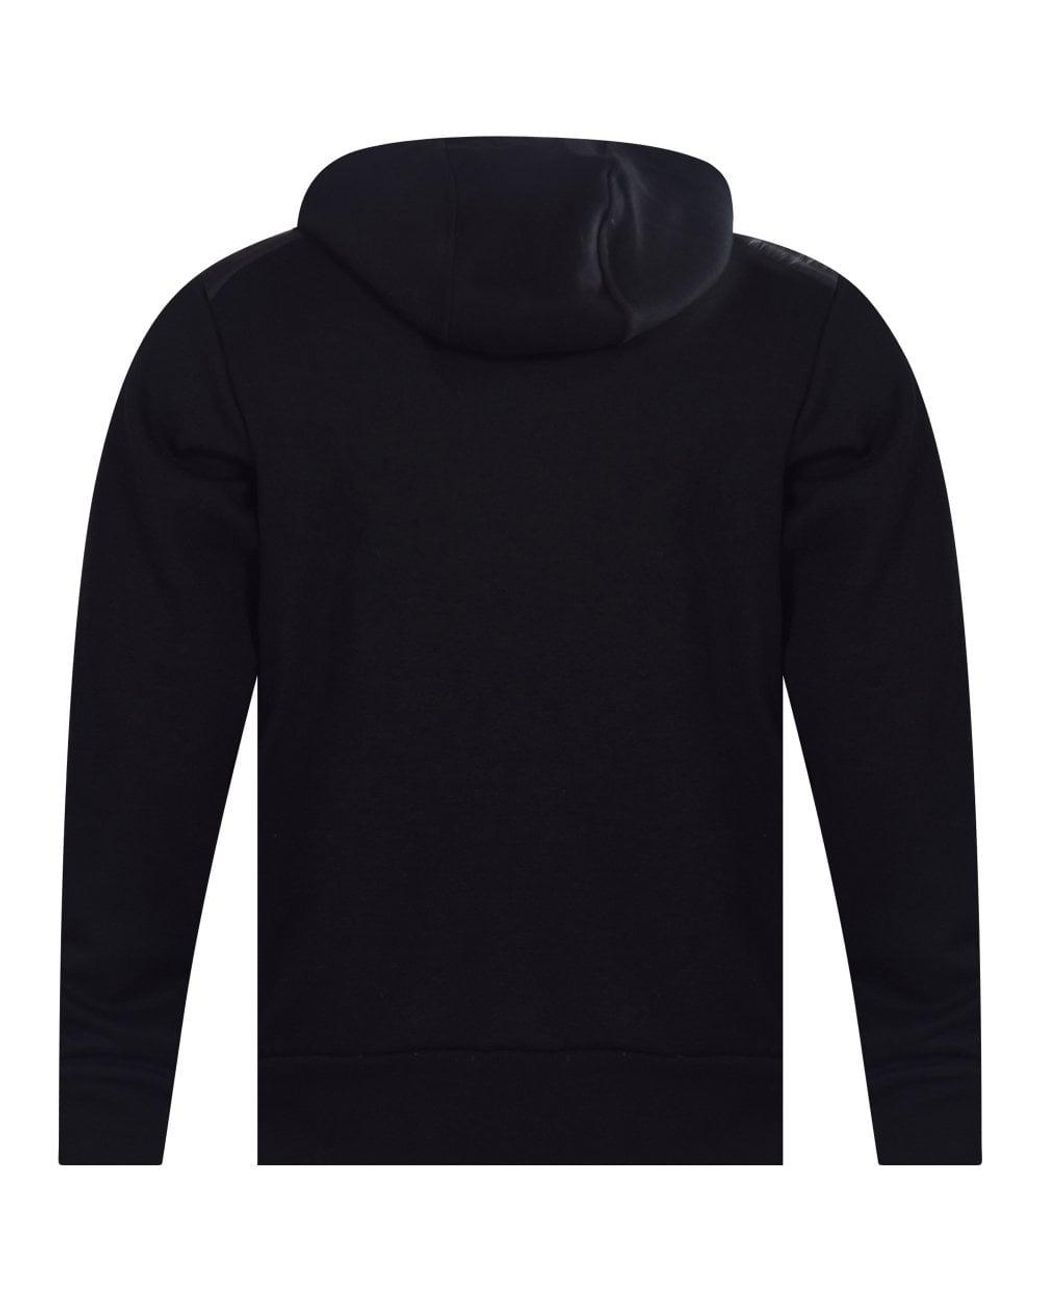 Polo Ralph Lauren Black Hybrid Jacket for Men | Lyst